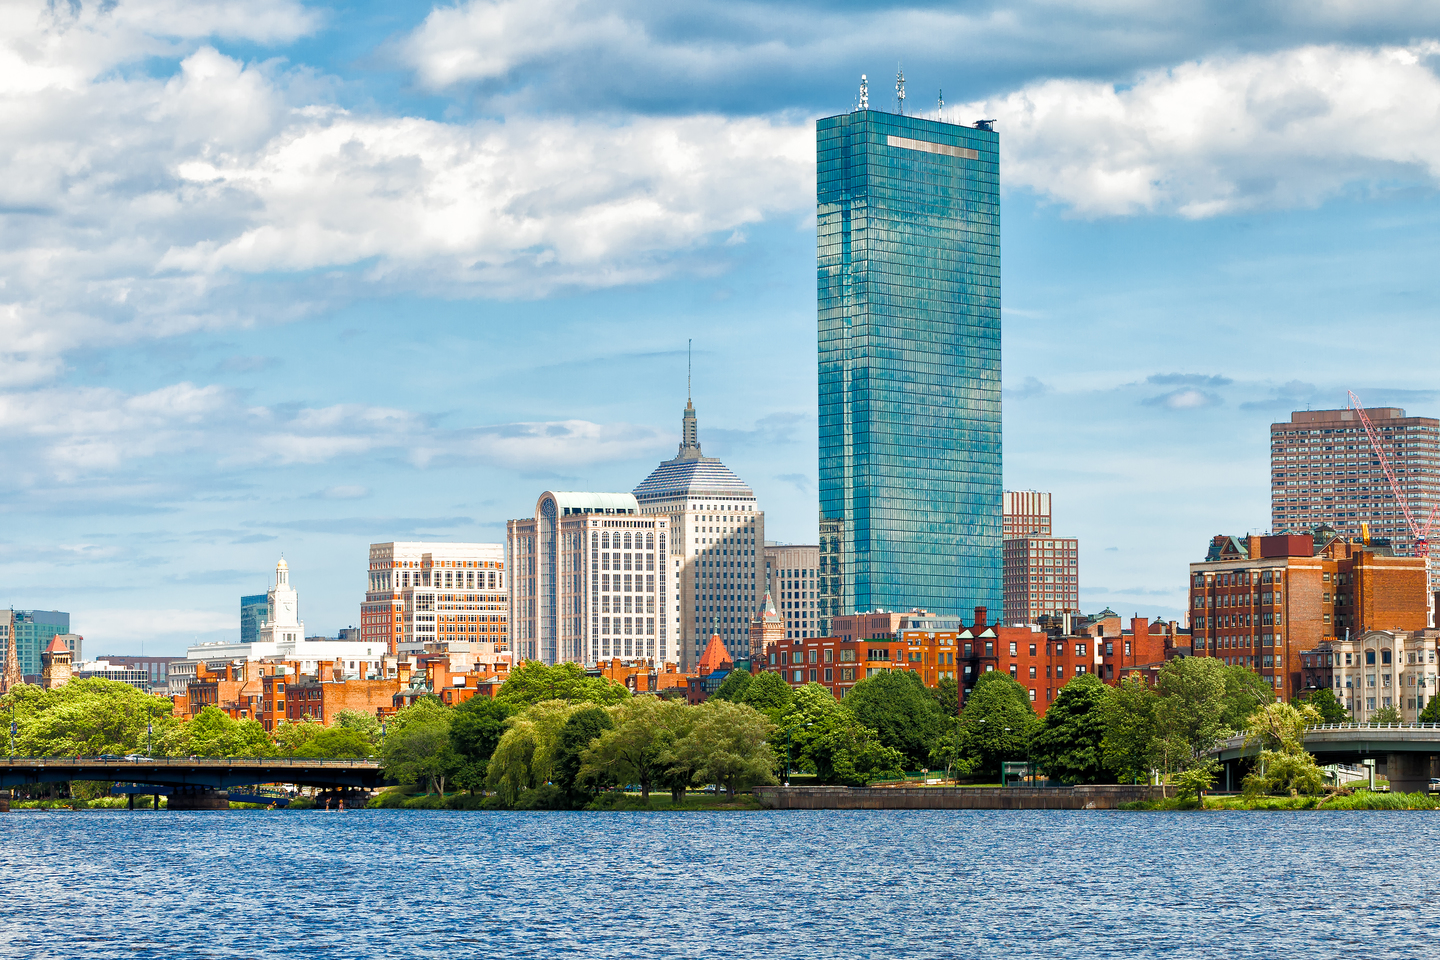 Boston skyline and Back Bay neighborhood